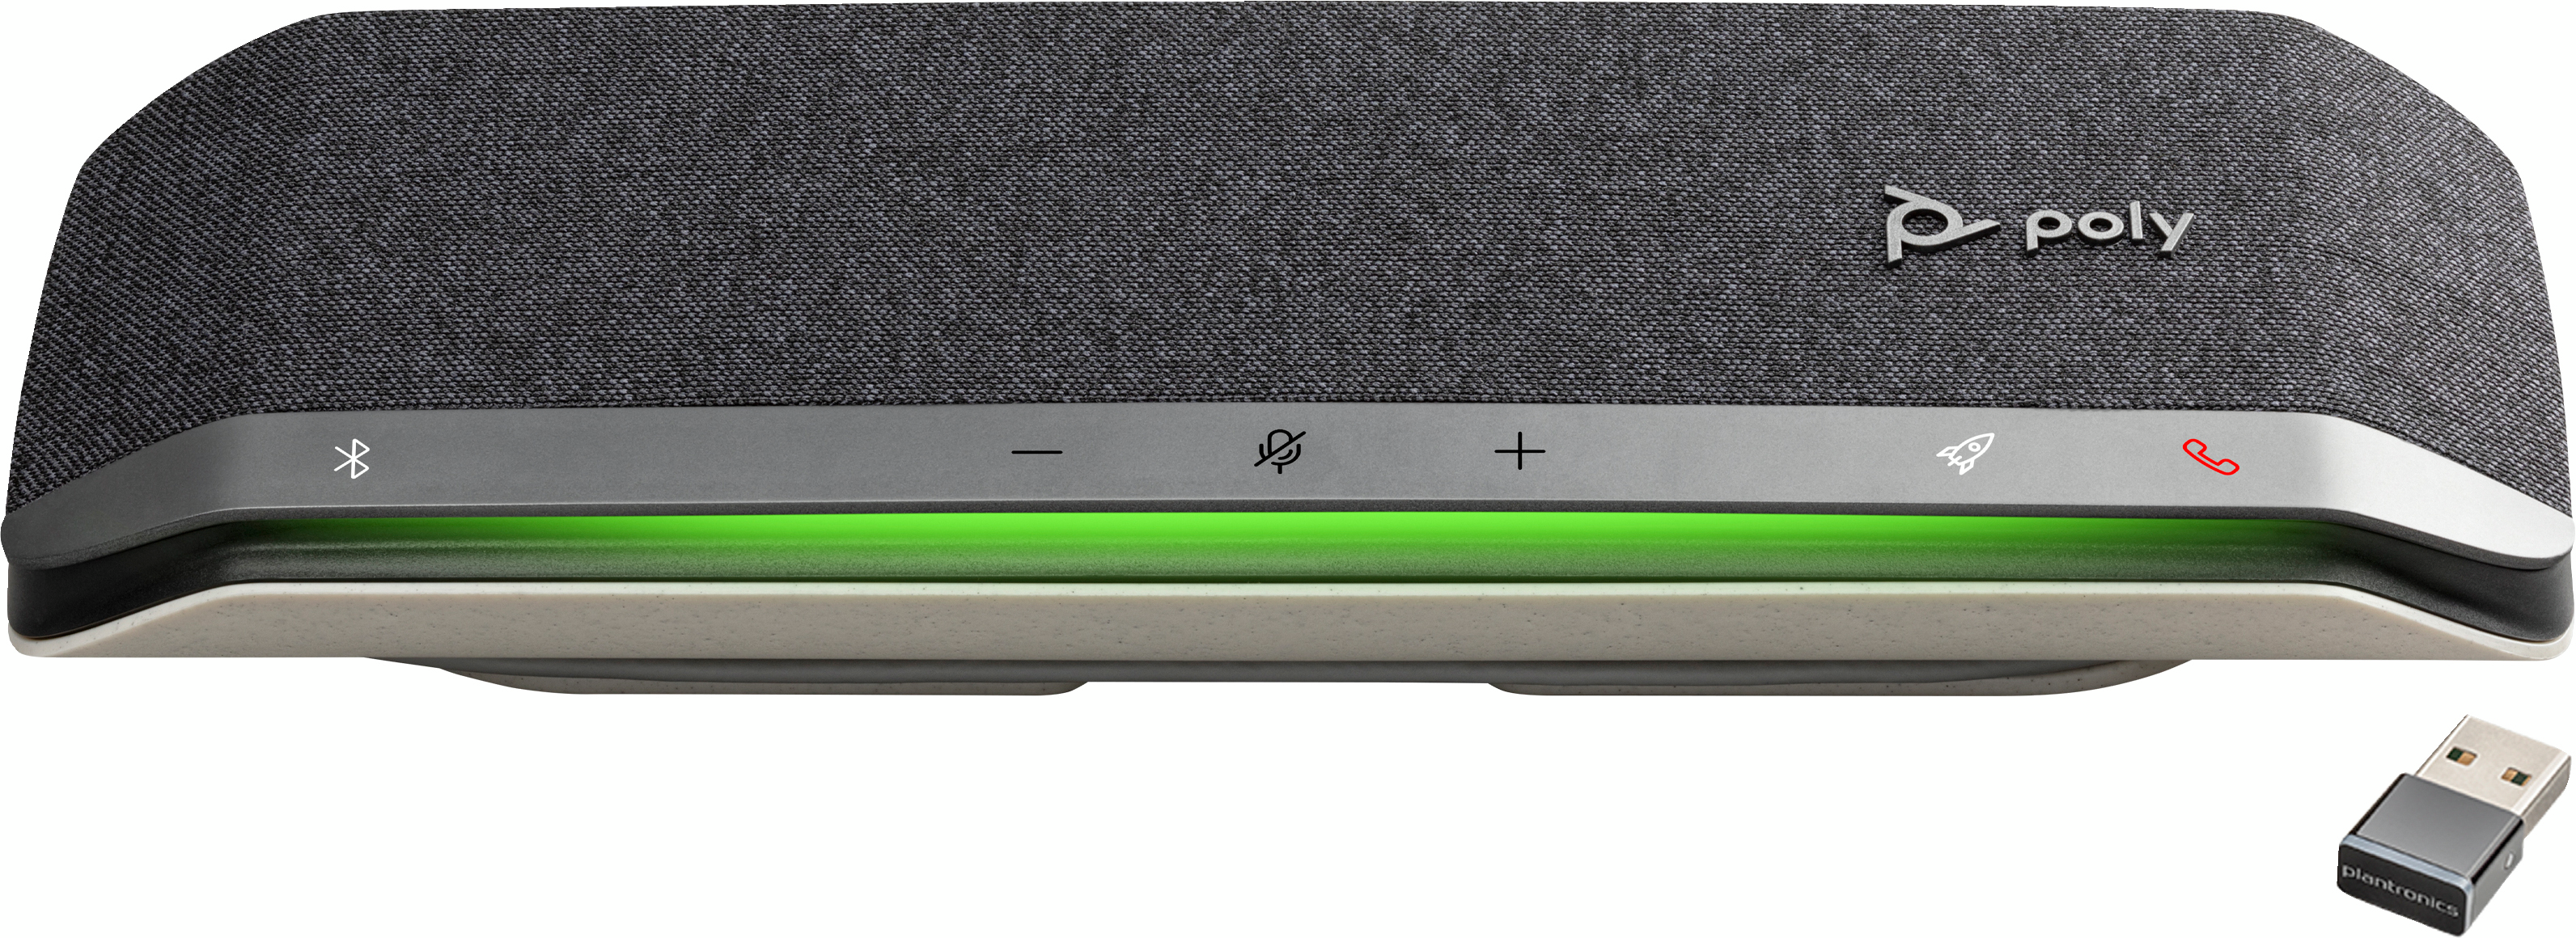 Cпикерфон Poly Sync 40+ с адаптером BT700A, USB-A, USB-C, Bluetooth, серый фото 4